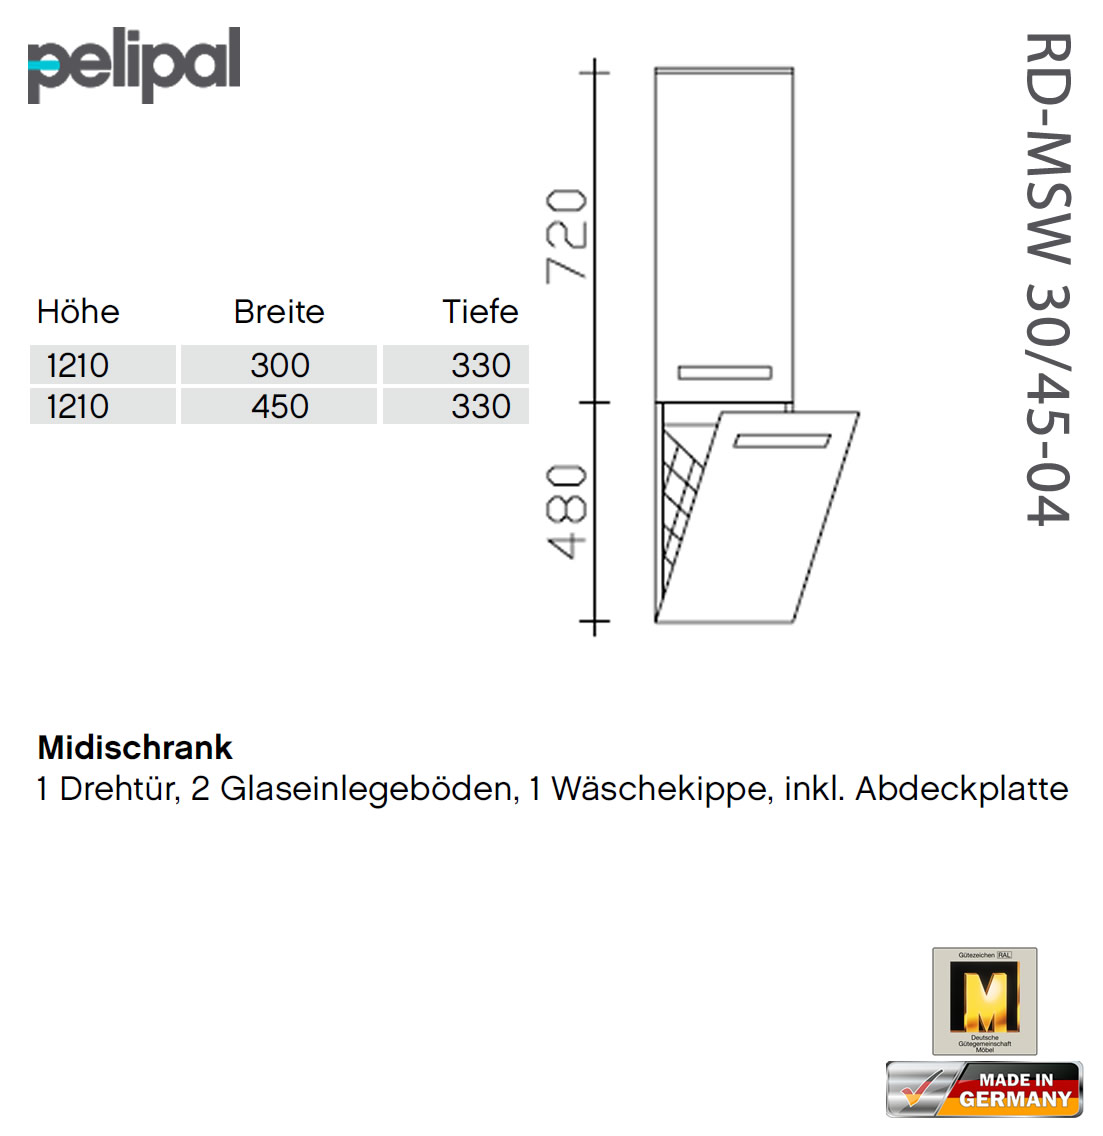 - Pelipal RD-MSW cm 7005 RD-MSW und 121 30-04 Midischrank 45-04